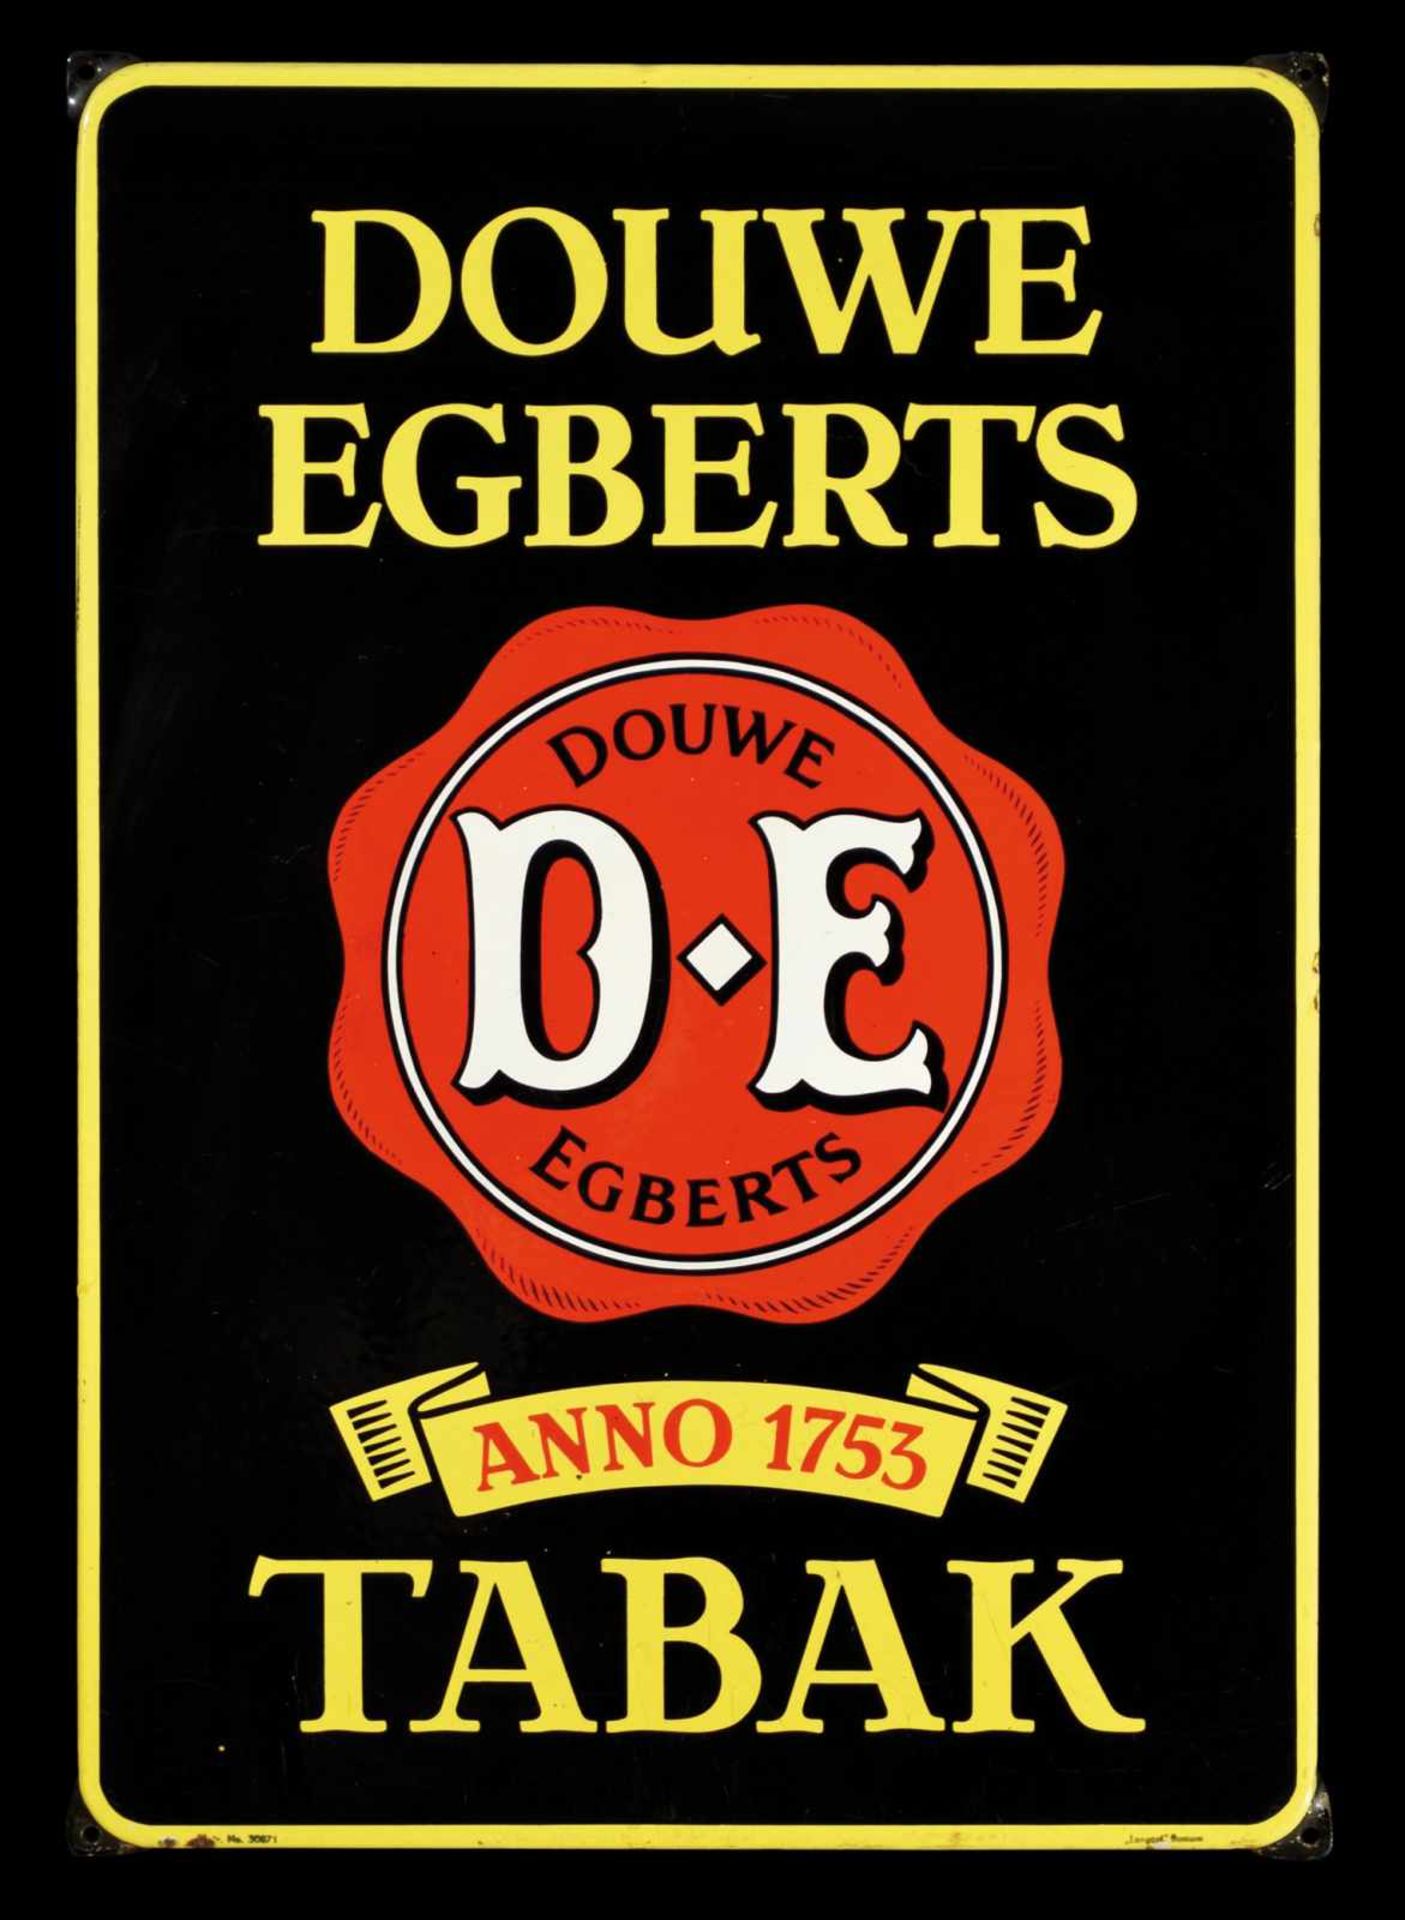 DOUWE EGBERTS TABAK (1-) Emailschild, abgekantet, schabloniert, Niederlande um 1950, 47 x 67 cm,